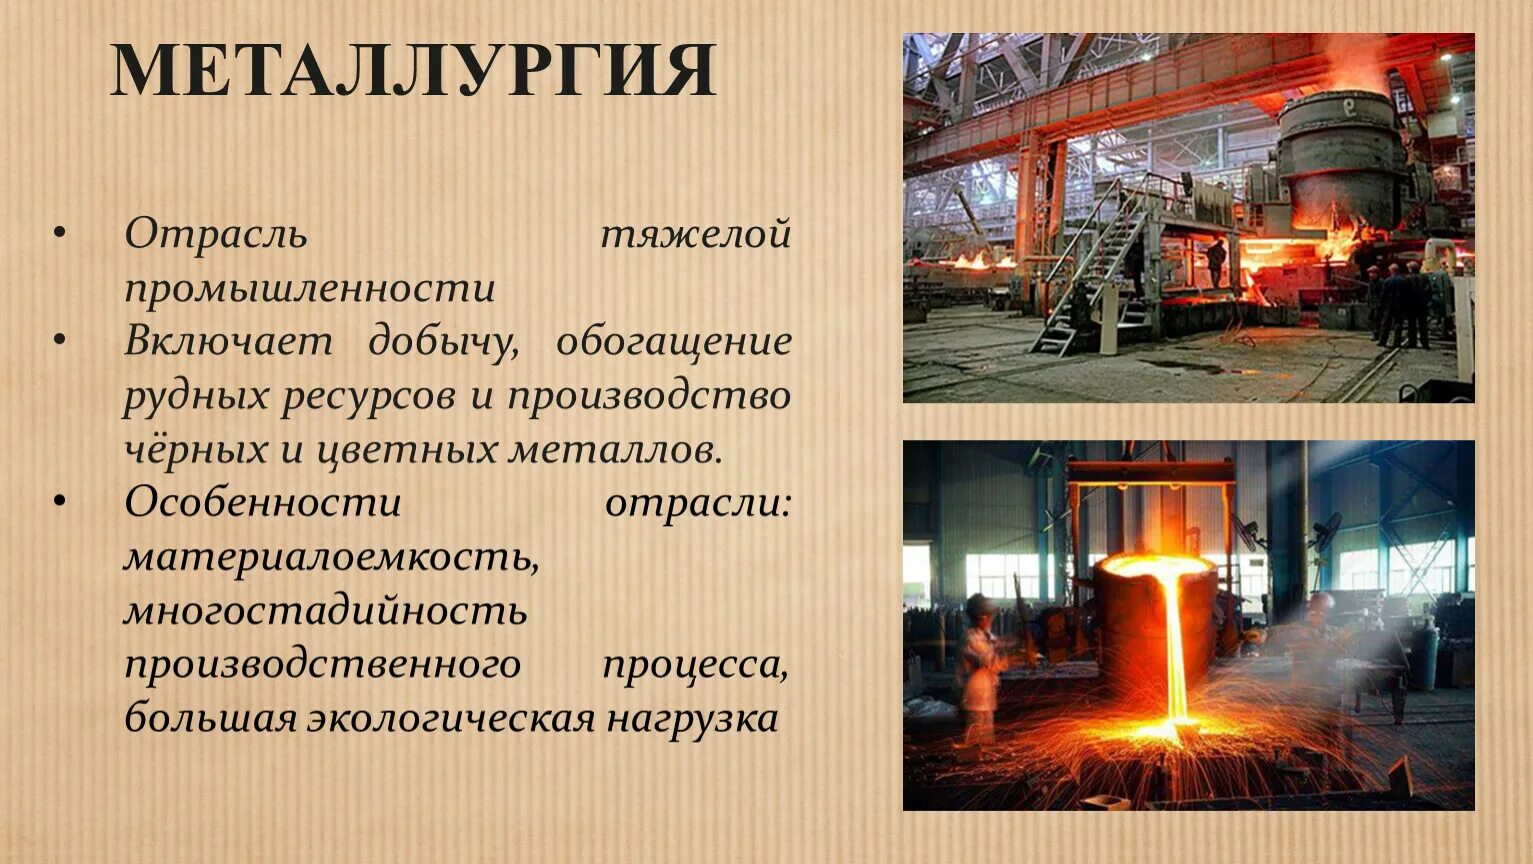 Отрасли промышленности цветная металлургия. Металлургия. Металлургия промышленность. Отрасли металлургии. Металлургия отрасль промышленности.